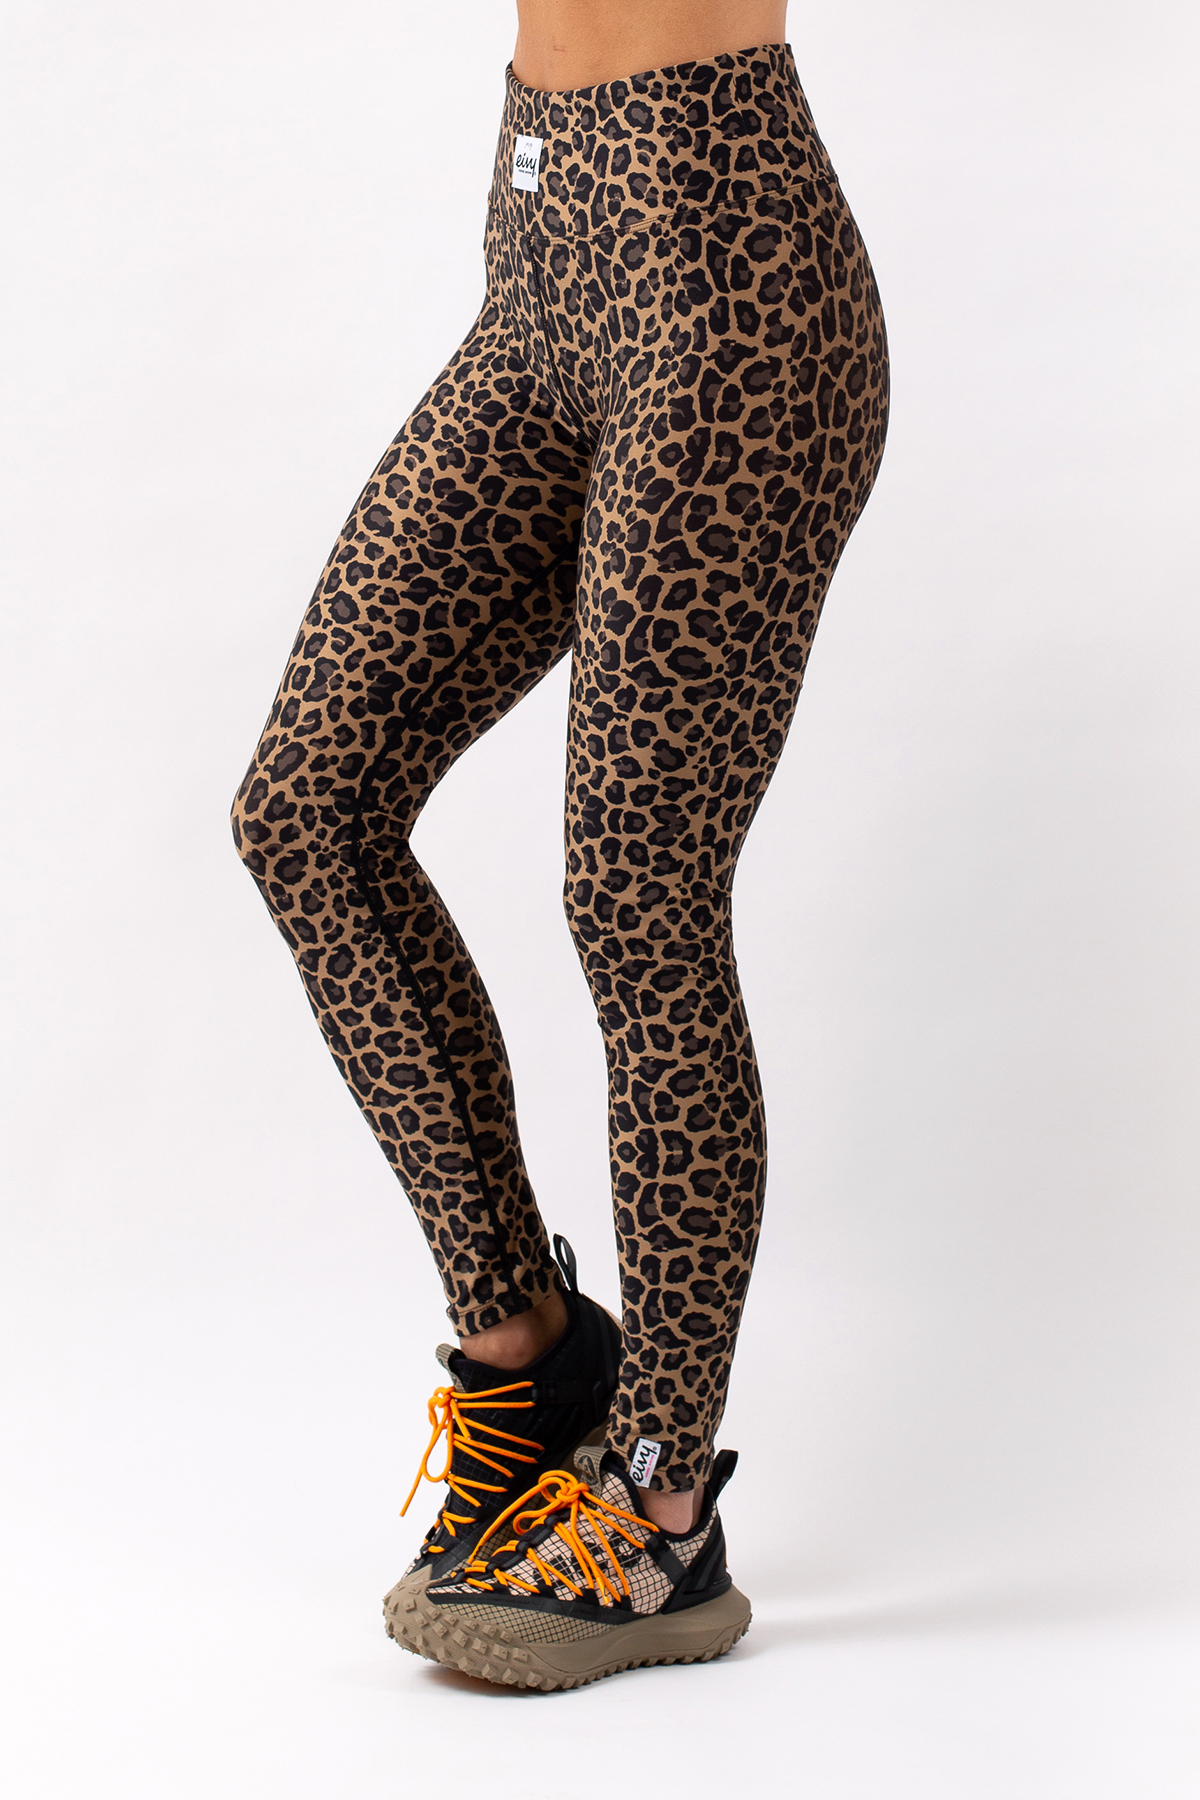 Women's Leopard Leggings